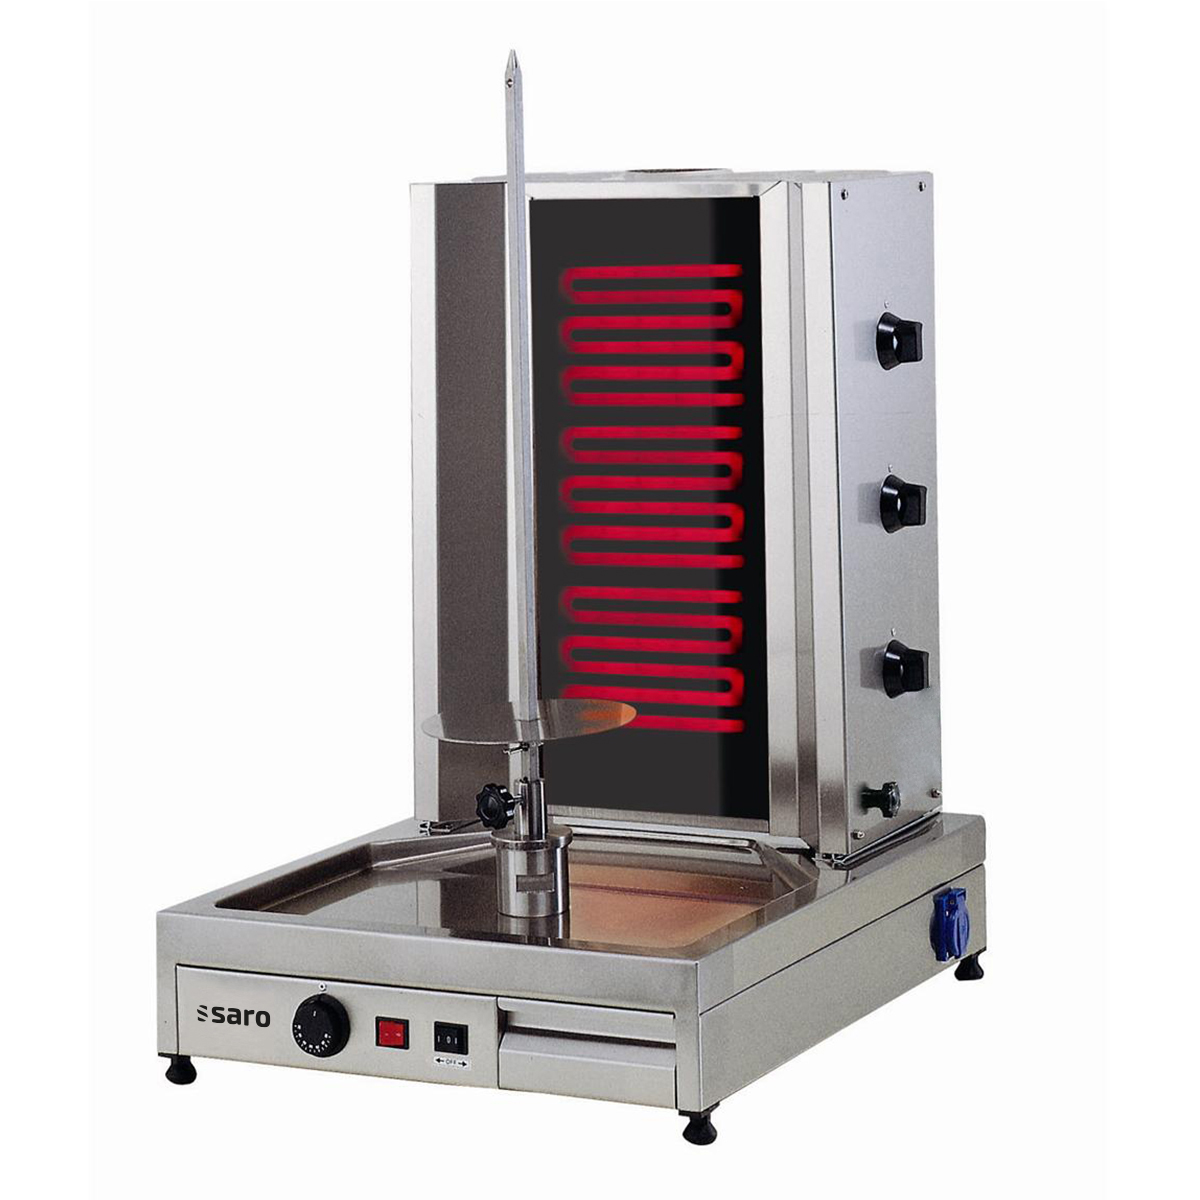 Elektrische kebab / gyros grill - model ED3